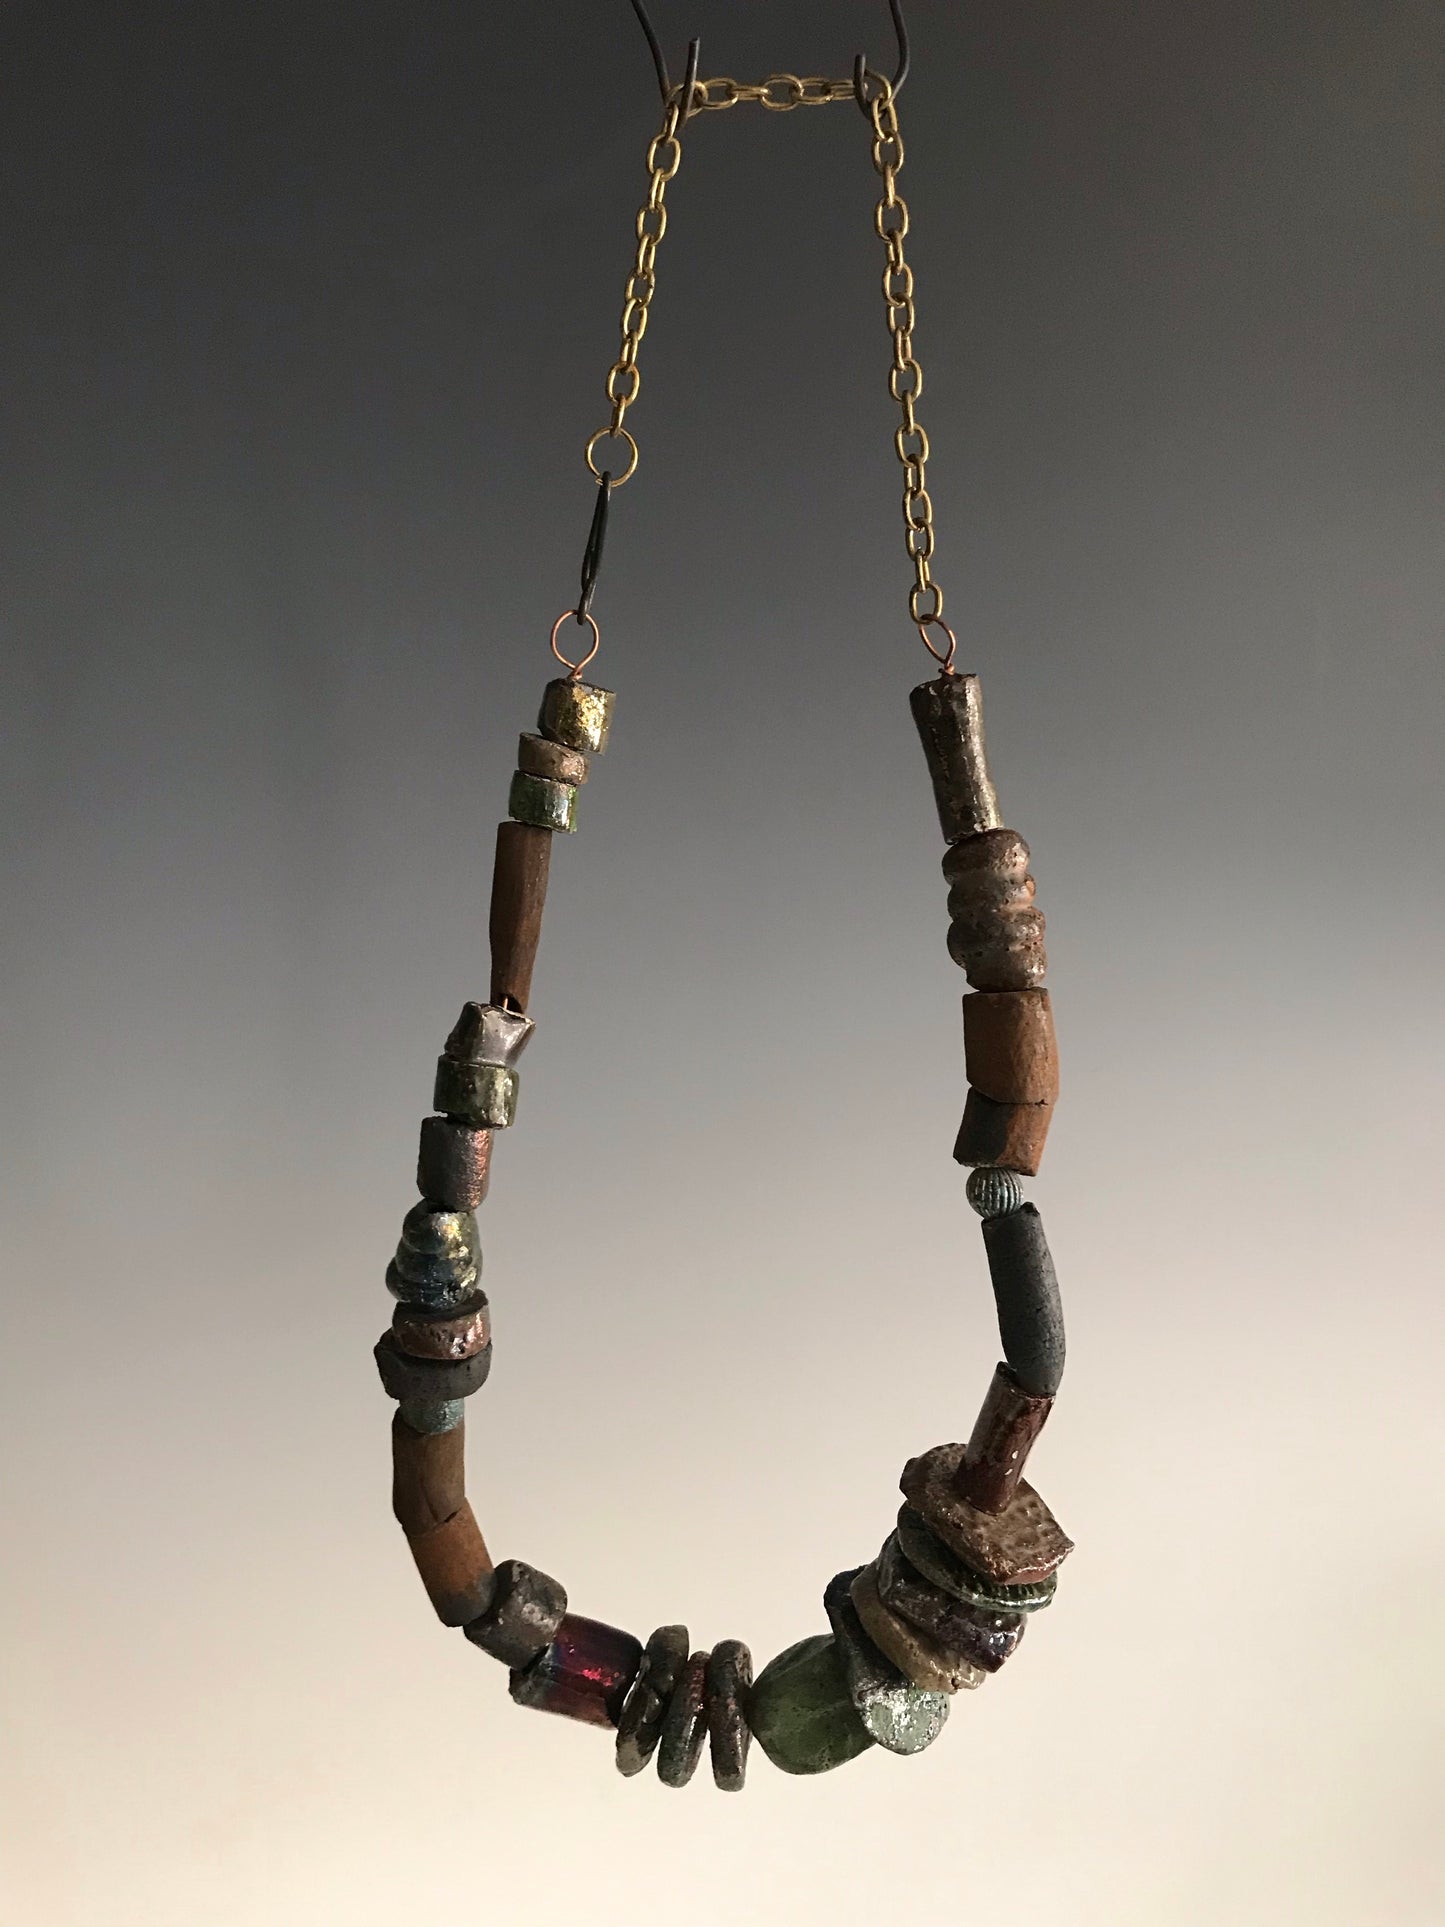 Nice!      30 handmade raku fired beads     26" in length with chain     5.2 oz